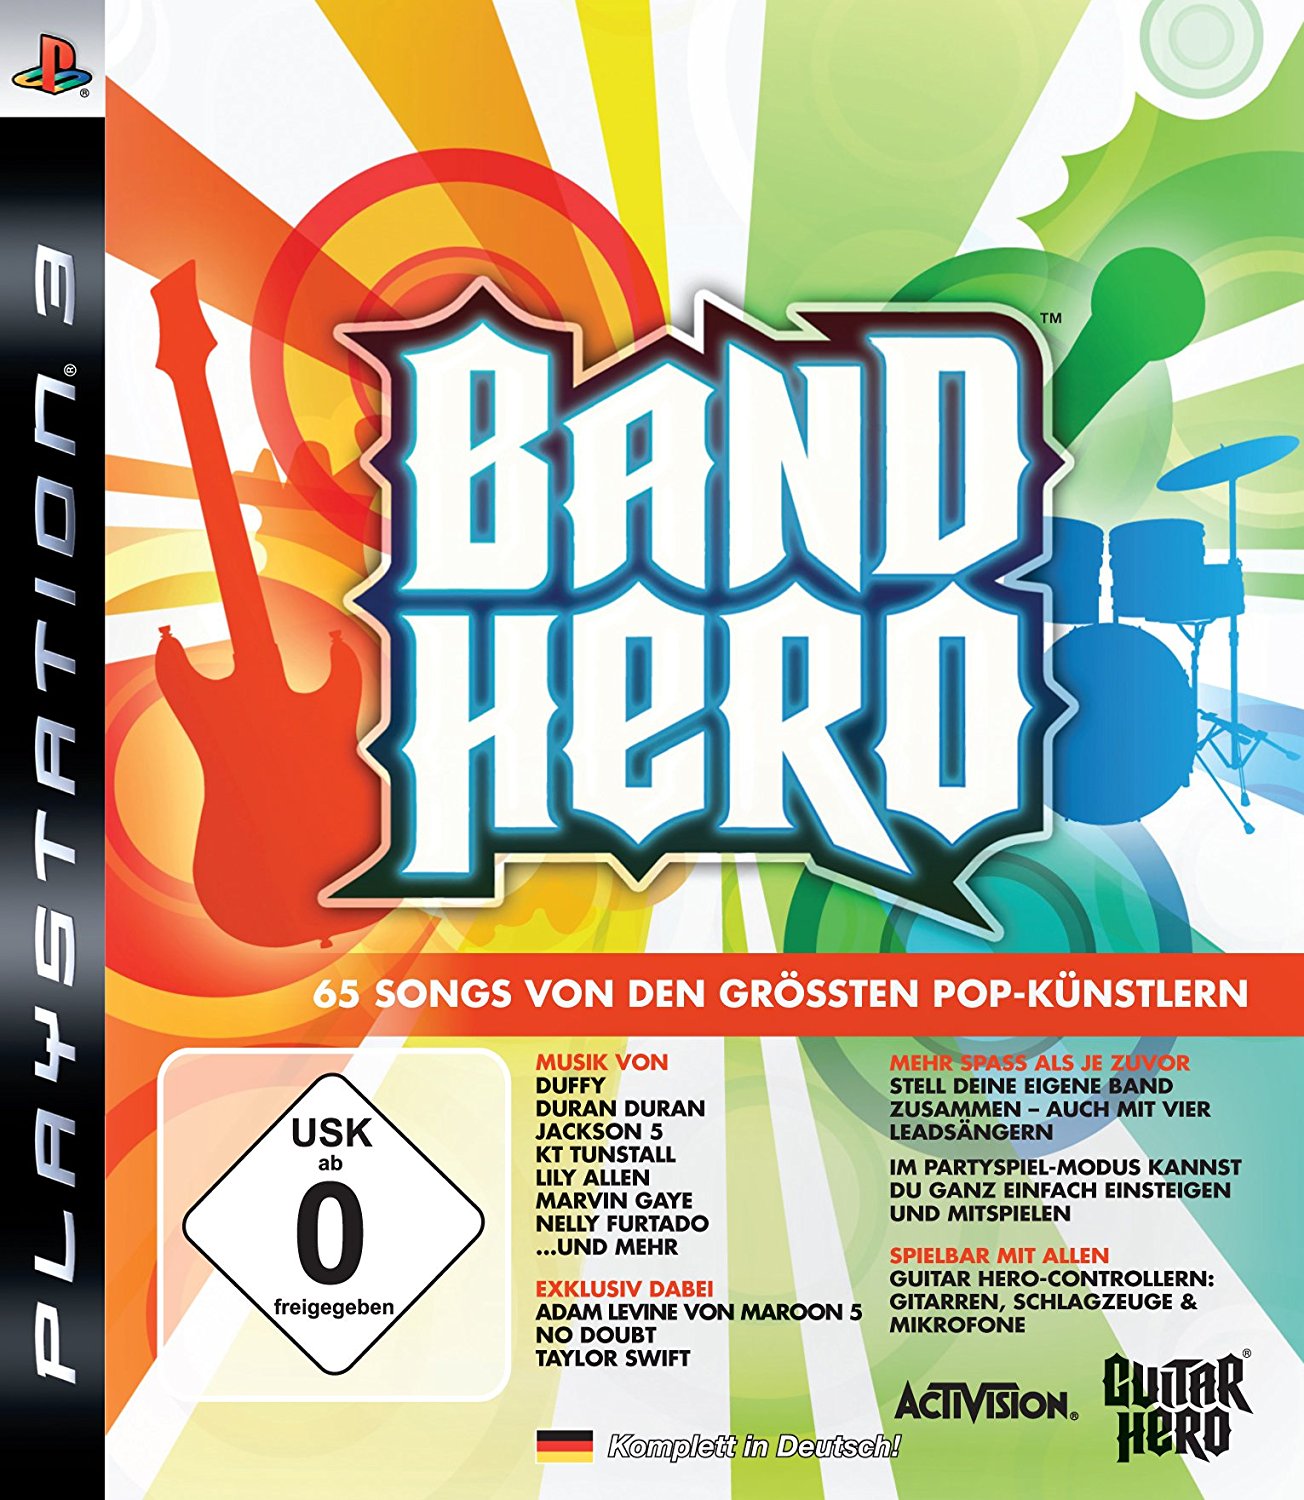 Band Hero PlayStation 3